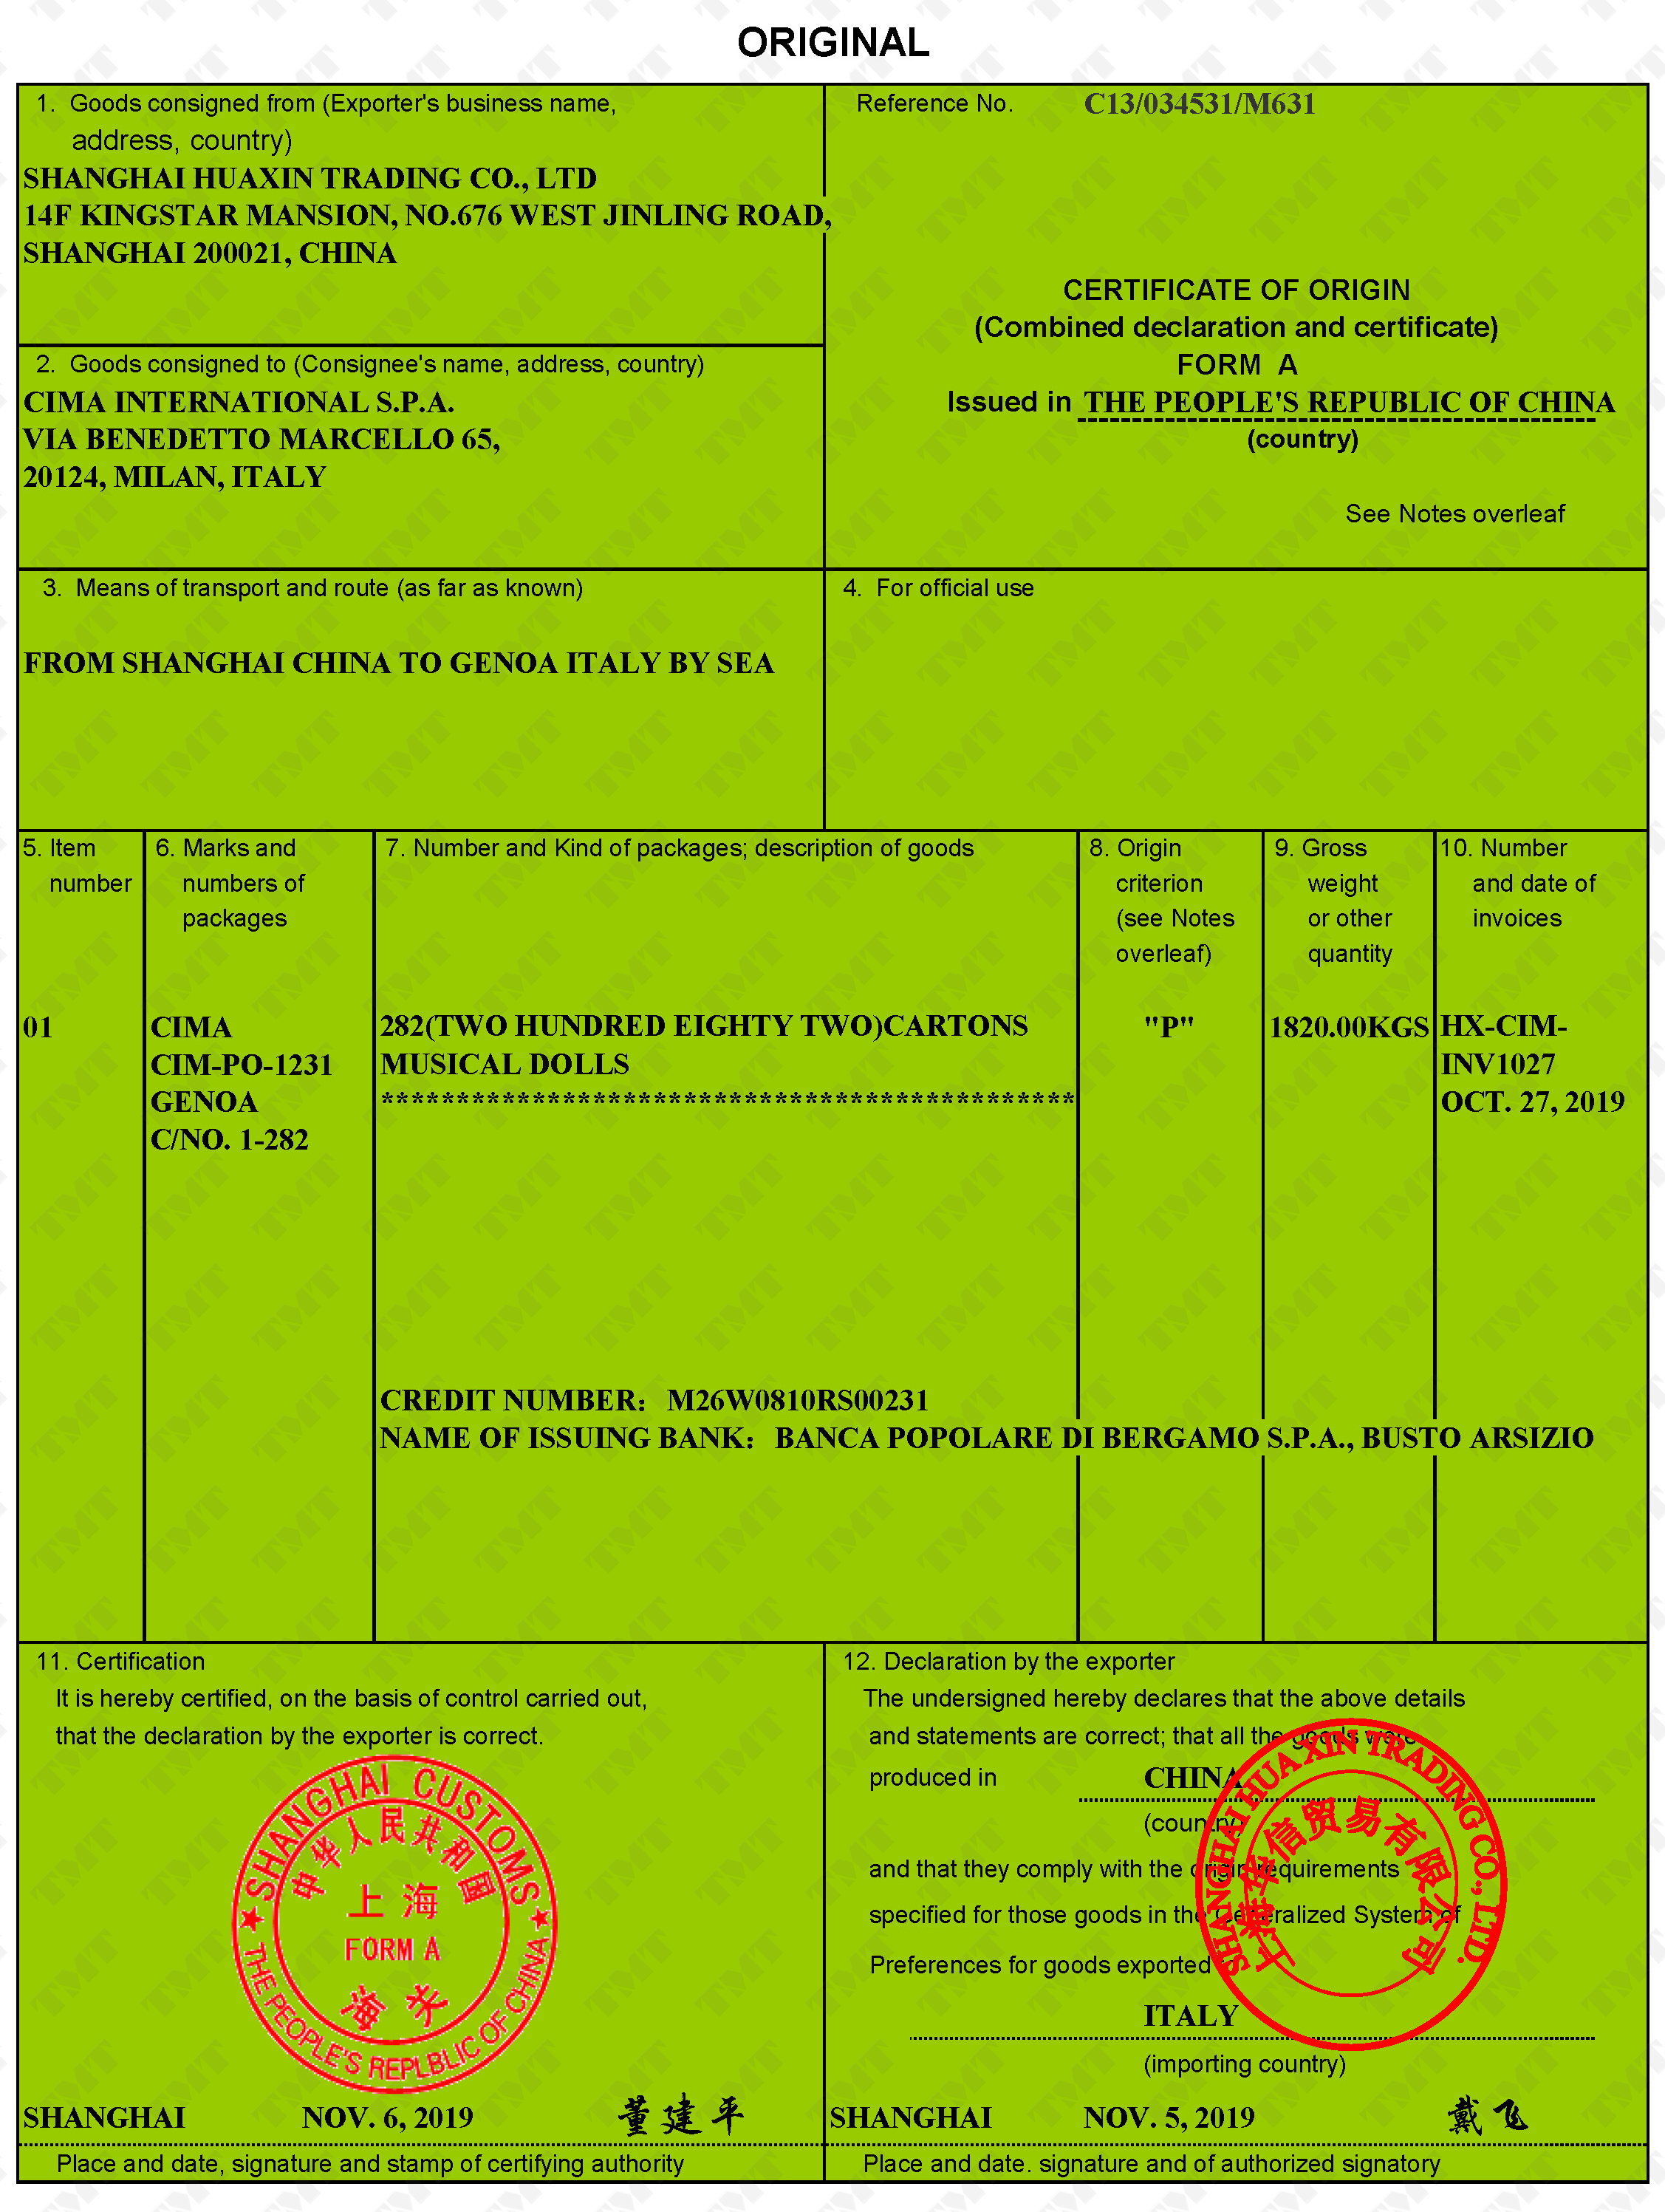 7.1.6-Certificate-of-origin-GSP-form-A.png